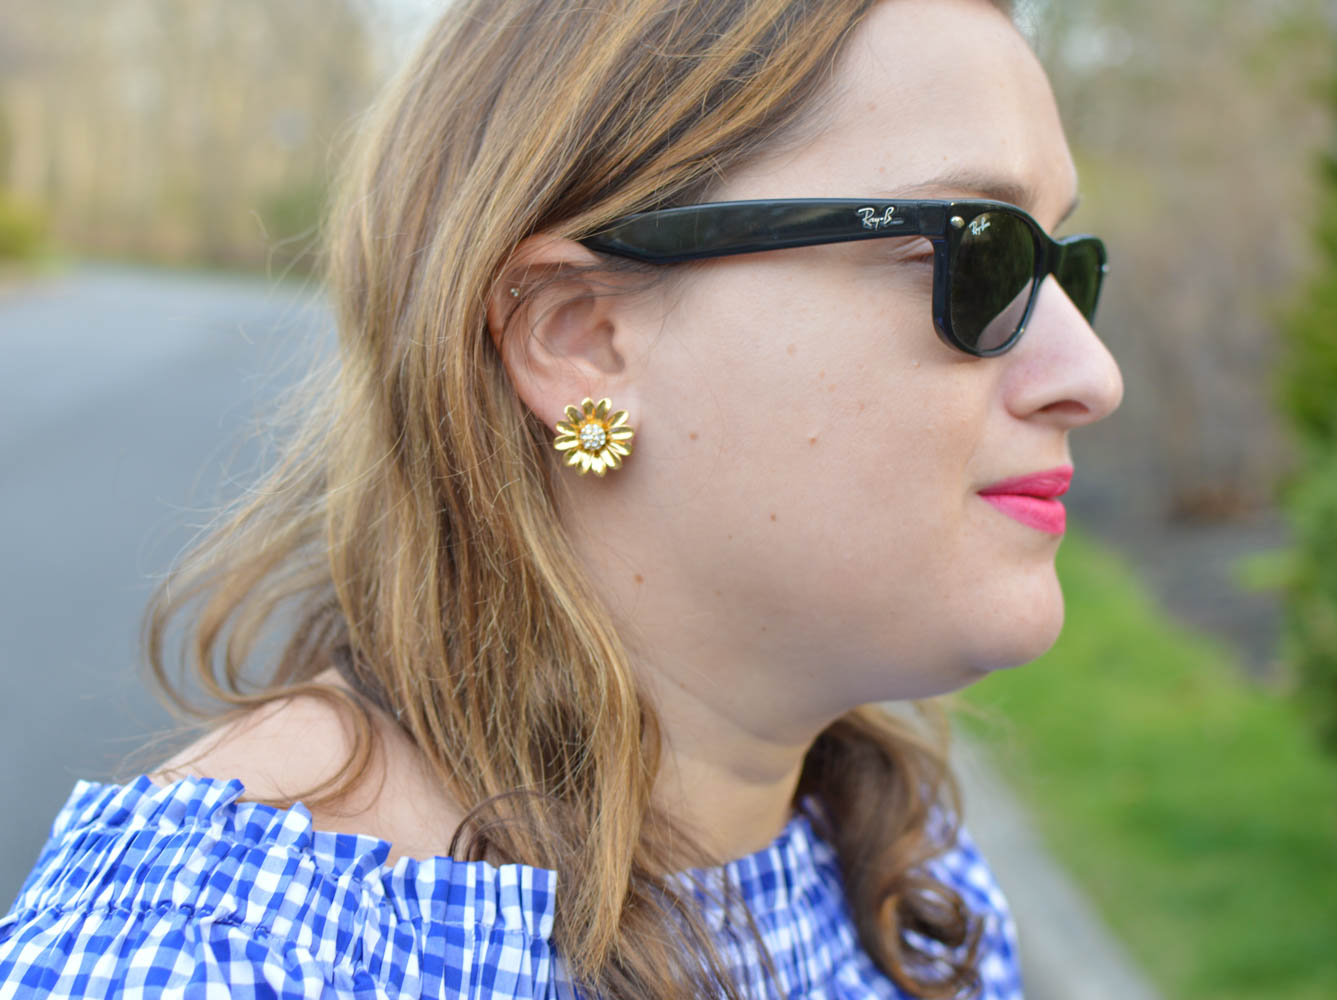 Kate Spade earrings